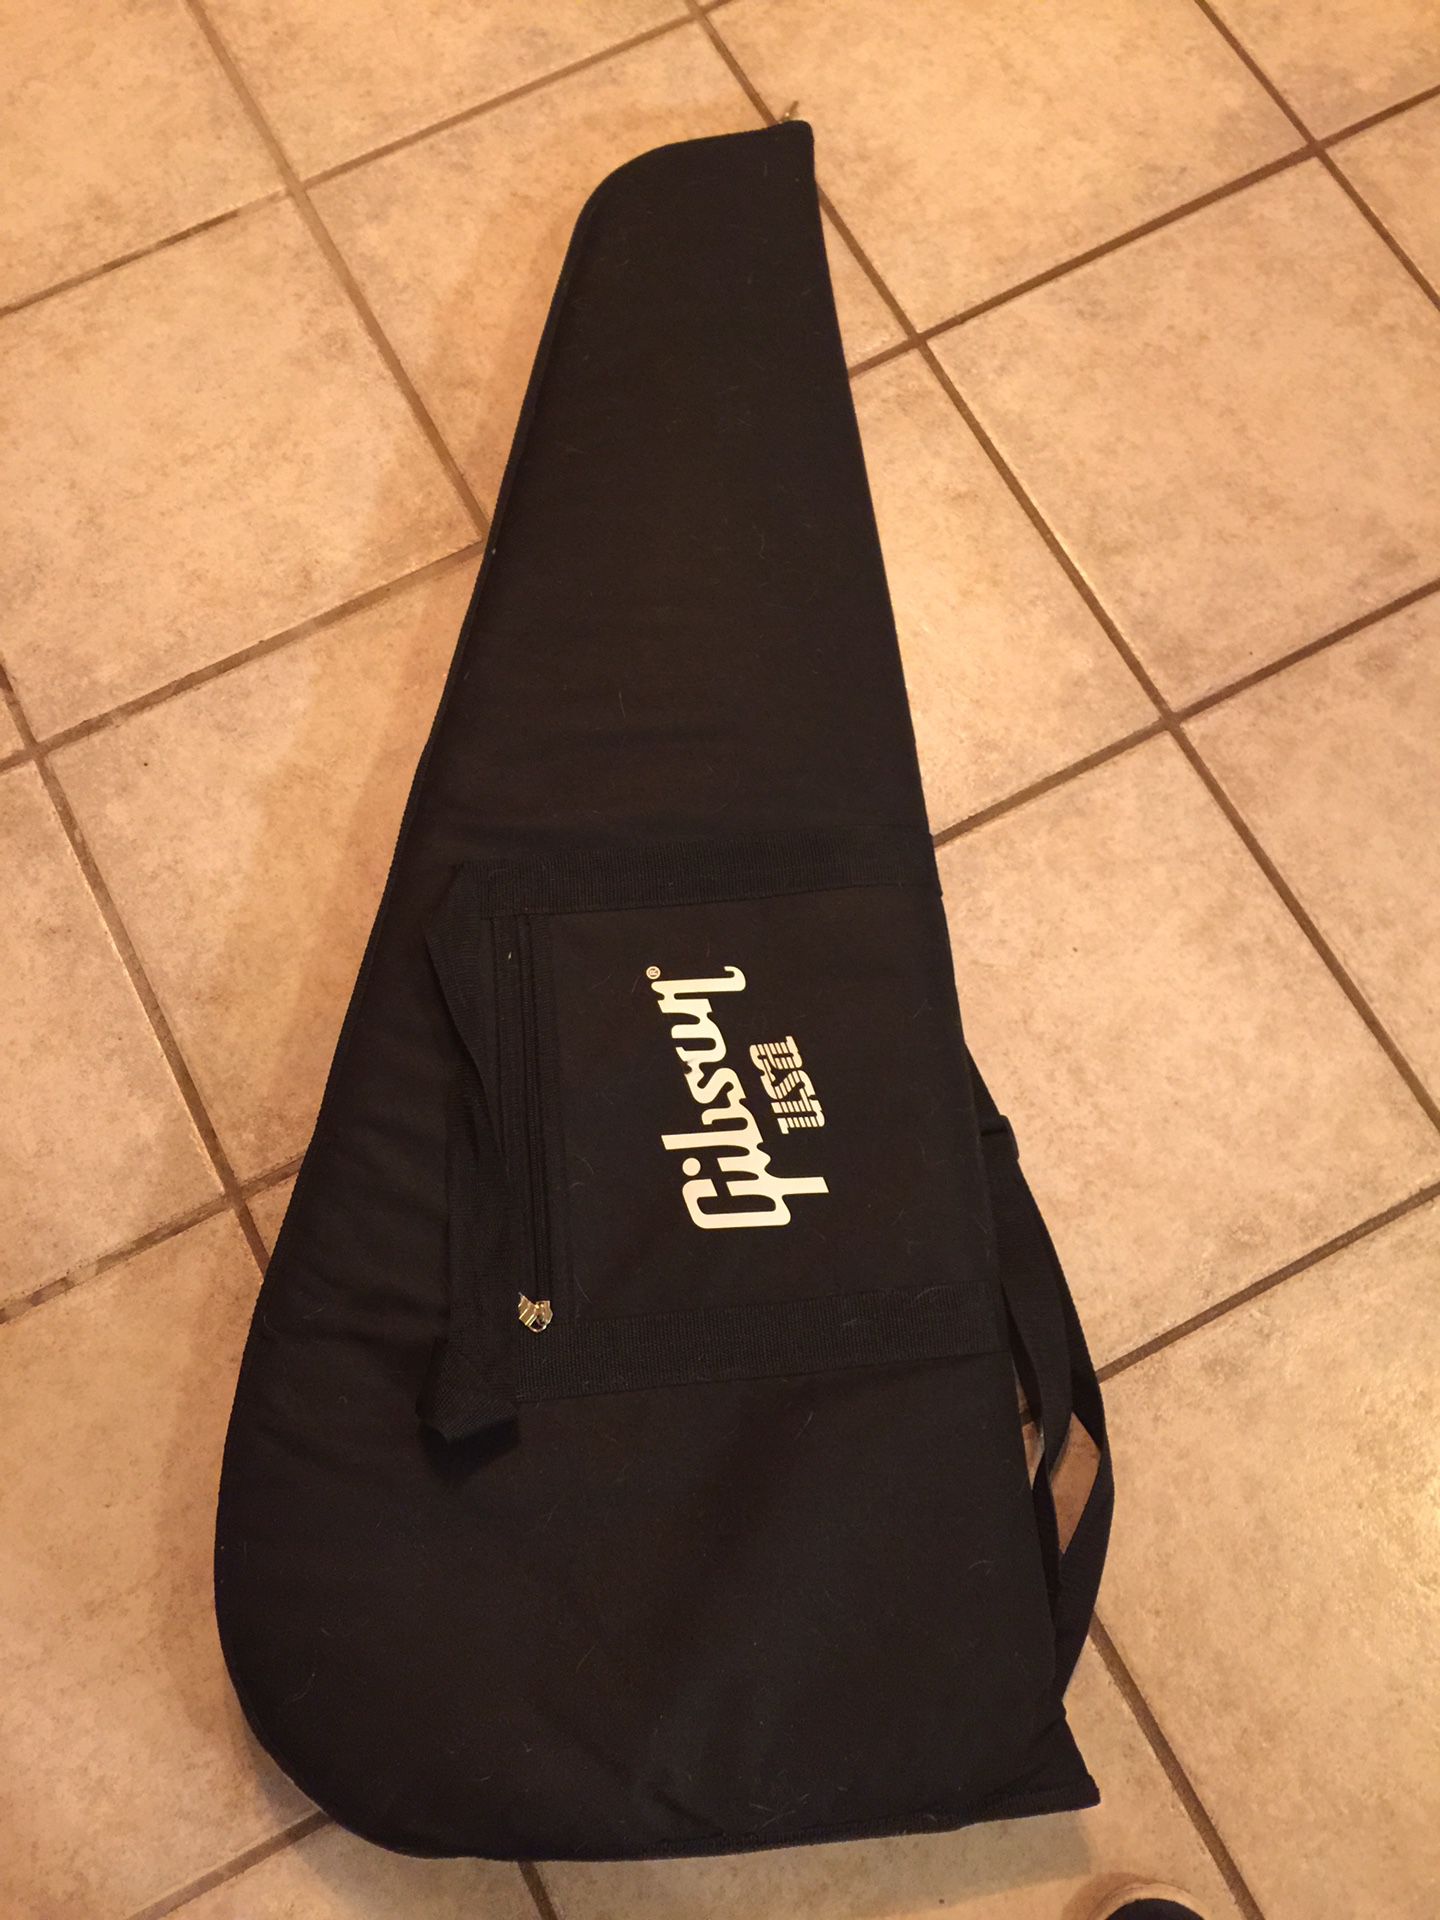 Gibson USA guitar gig bag new